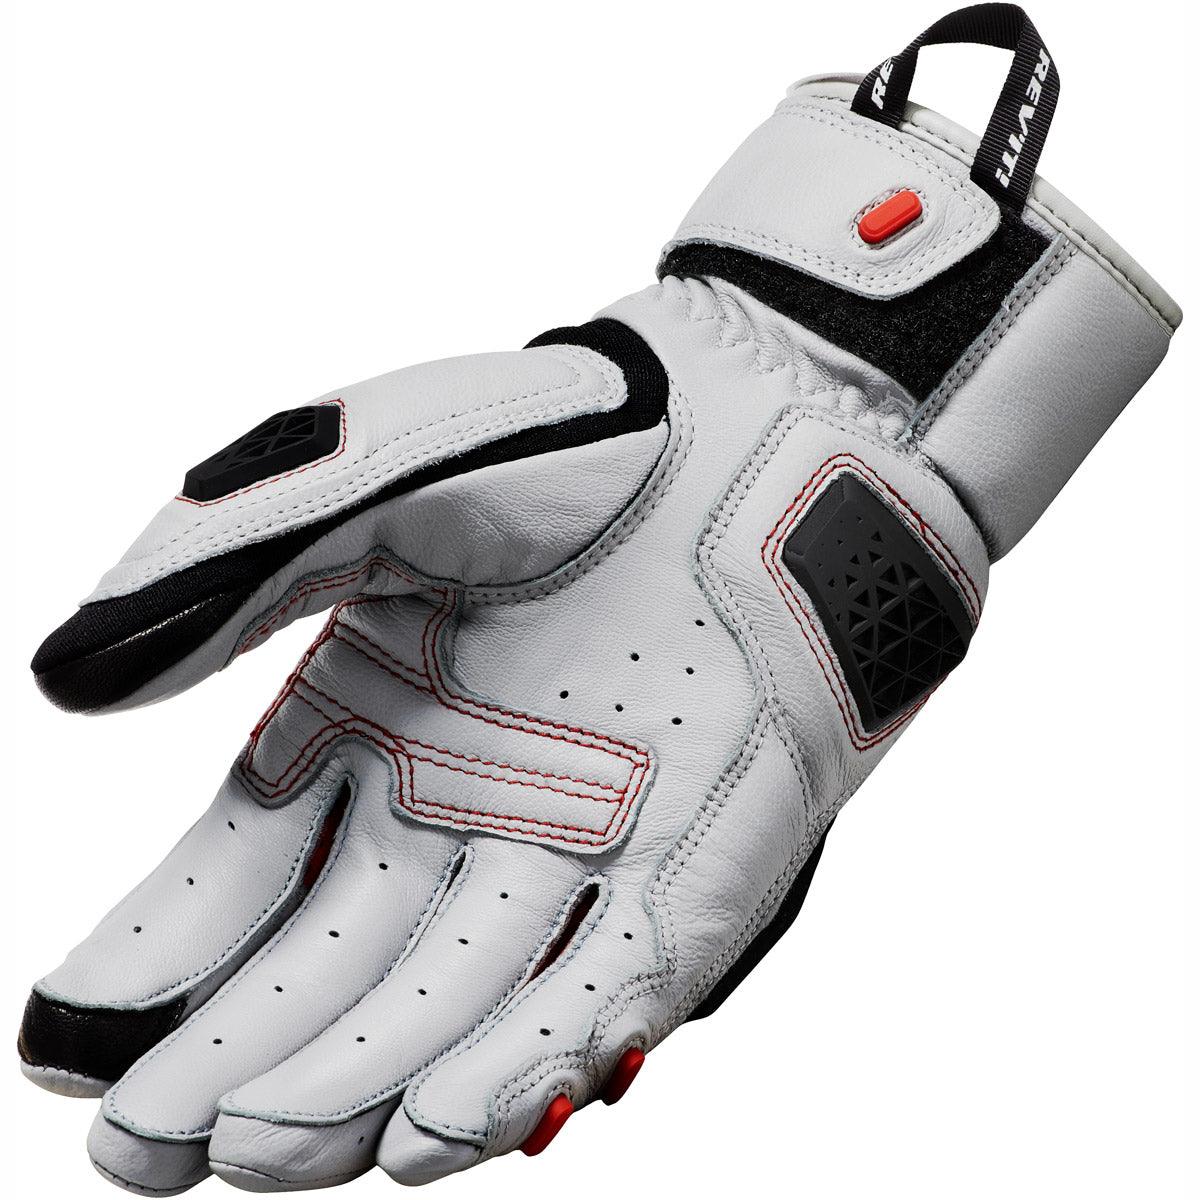 Rev It! Sand 4 Gloves - Light Grey Black - The Motocrosshut